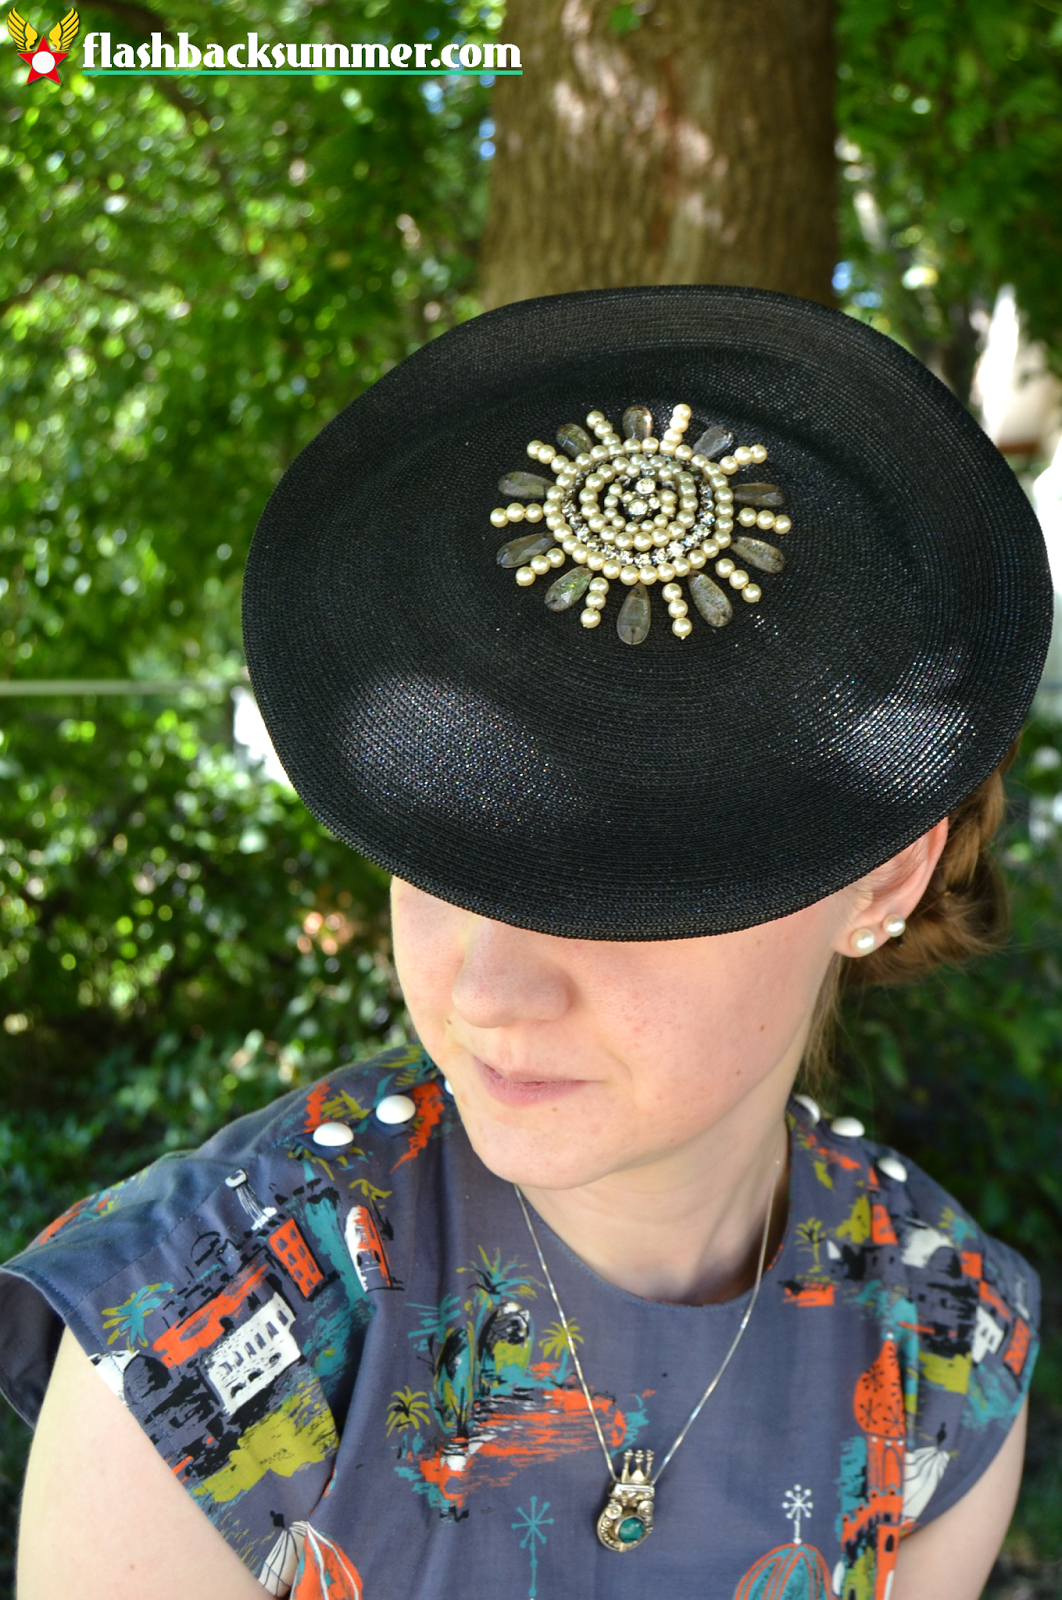 Flashback Summer: Middle East Novelty Skirt Refashion Deets -  1940s tilt hat